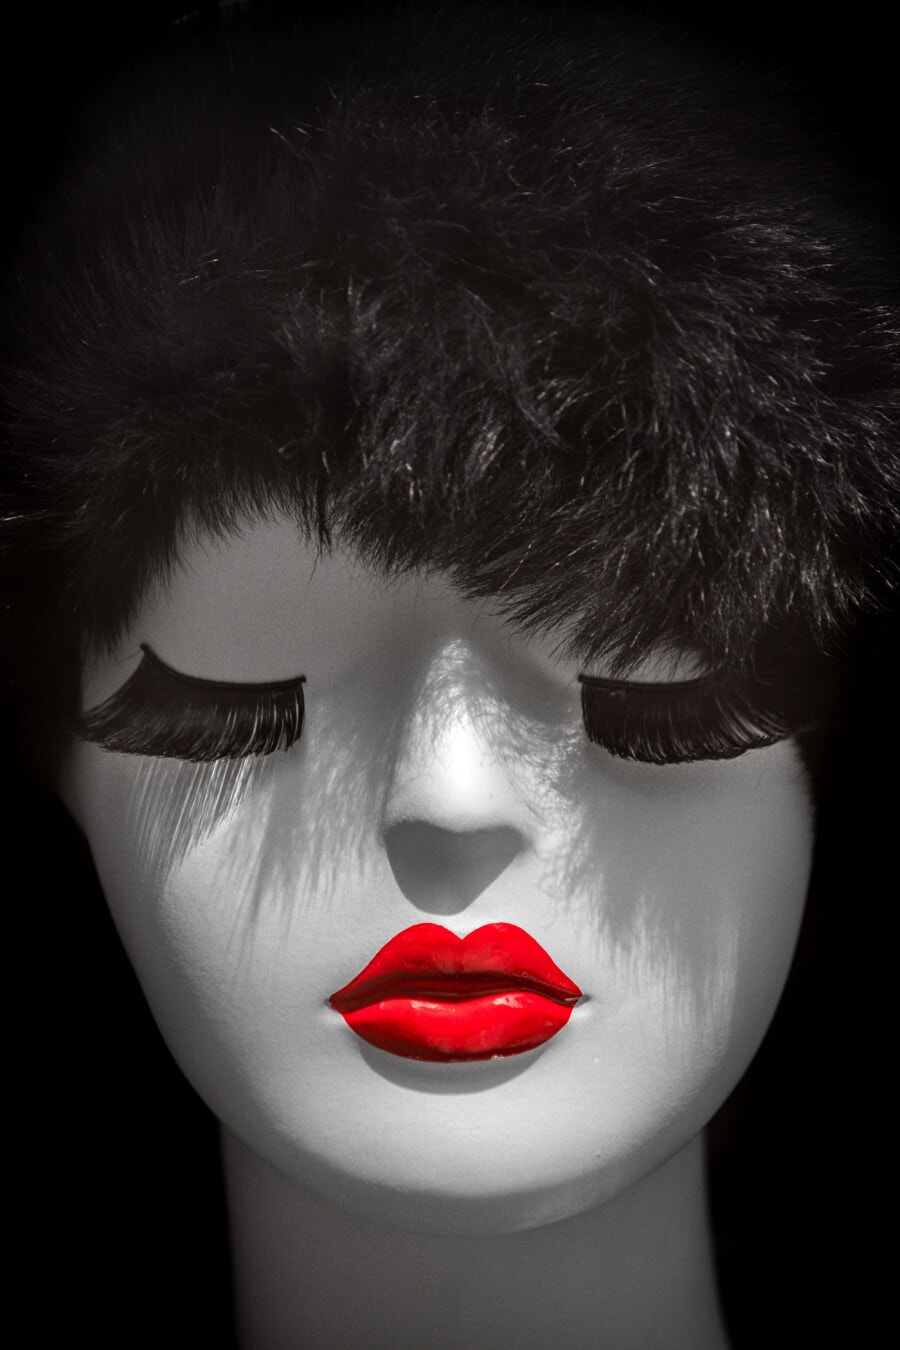 nhựa, búp bê, đầu, ký-đóng, màu đen và trắng, Son môi, Dark red, khuôn mặt, tóc, mô hình